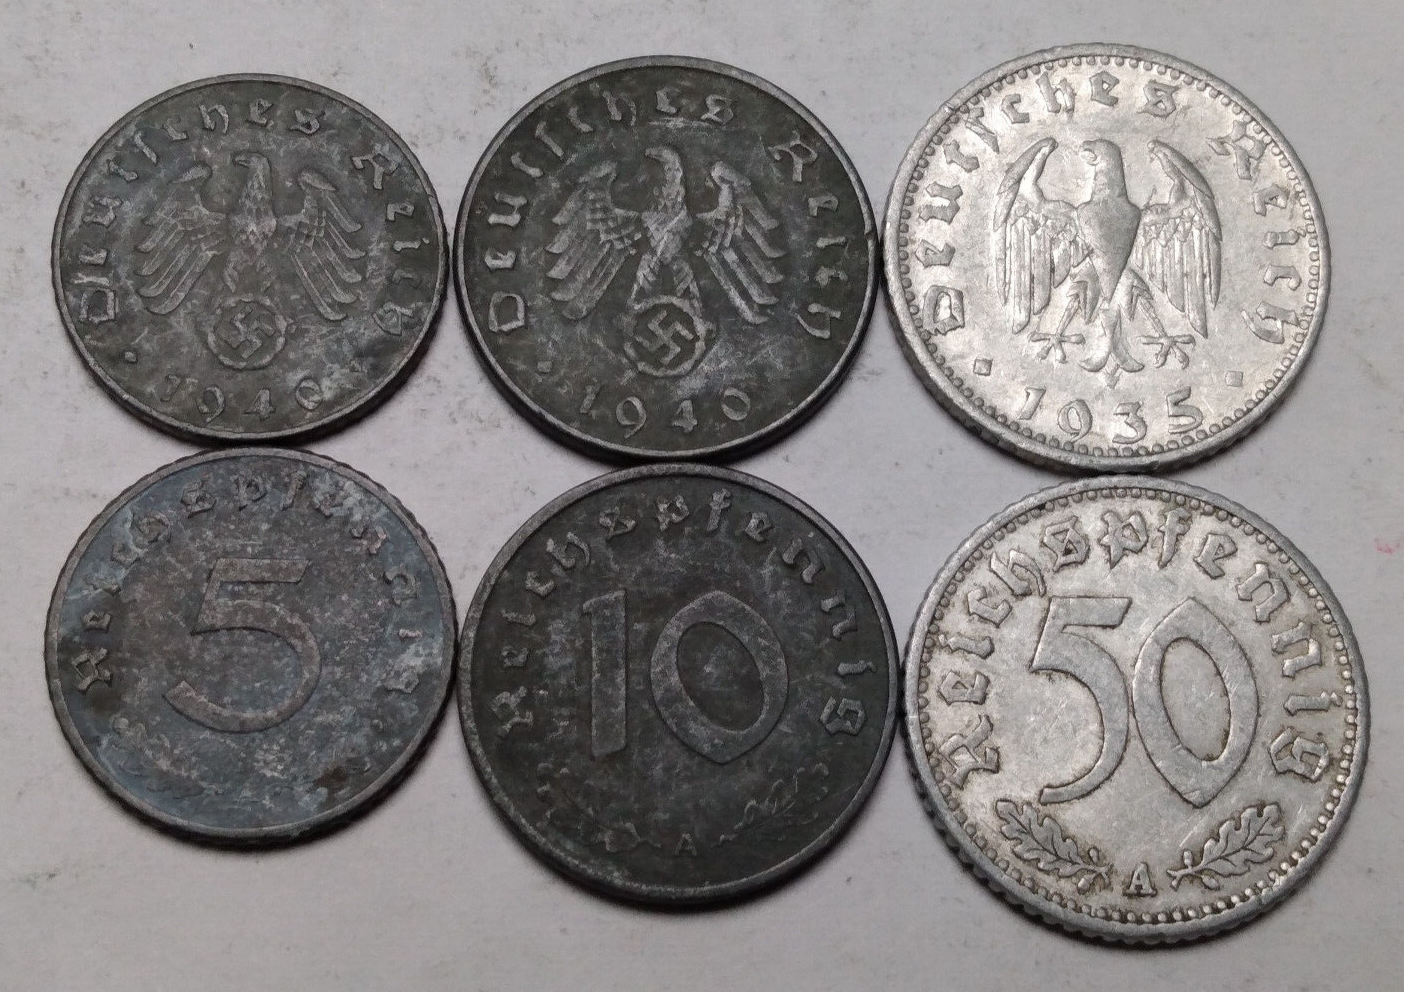 Germany Third Reich Nazi - Lot 3x Coins 5, 10 and 50 Reichspfennig - Please Read Без бренда - фотография #2